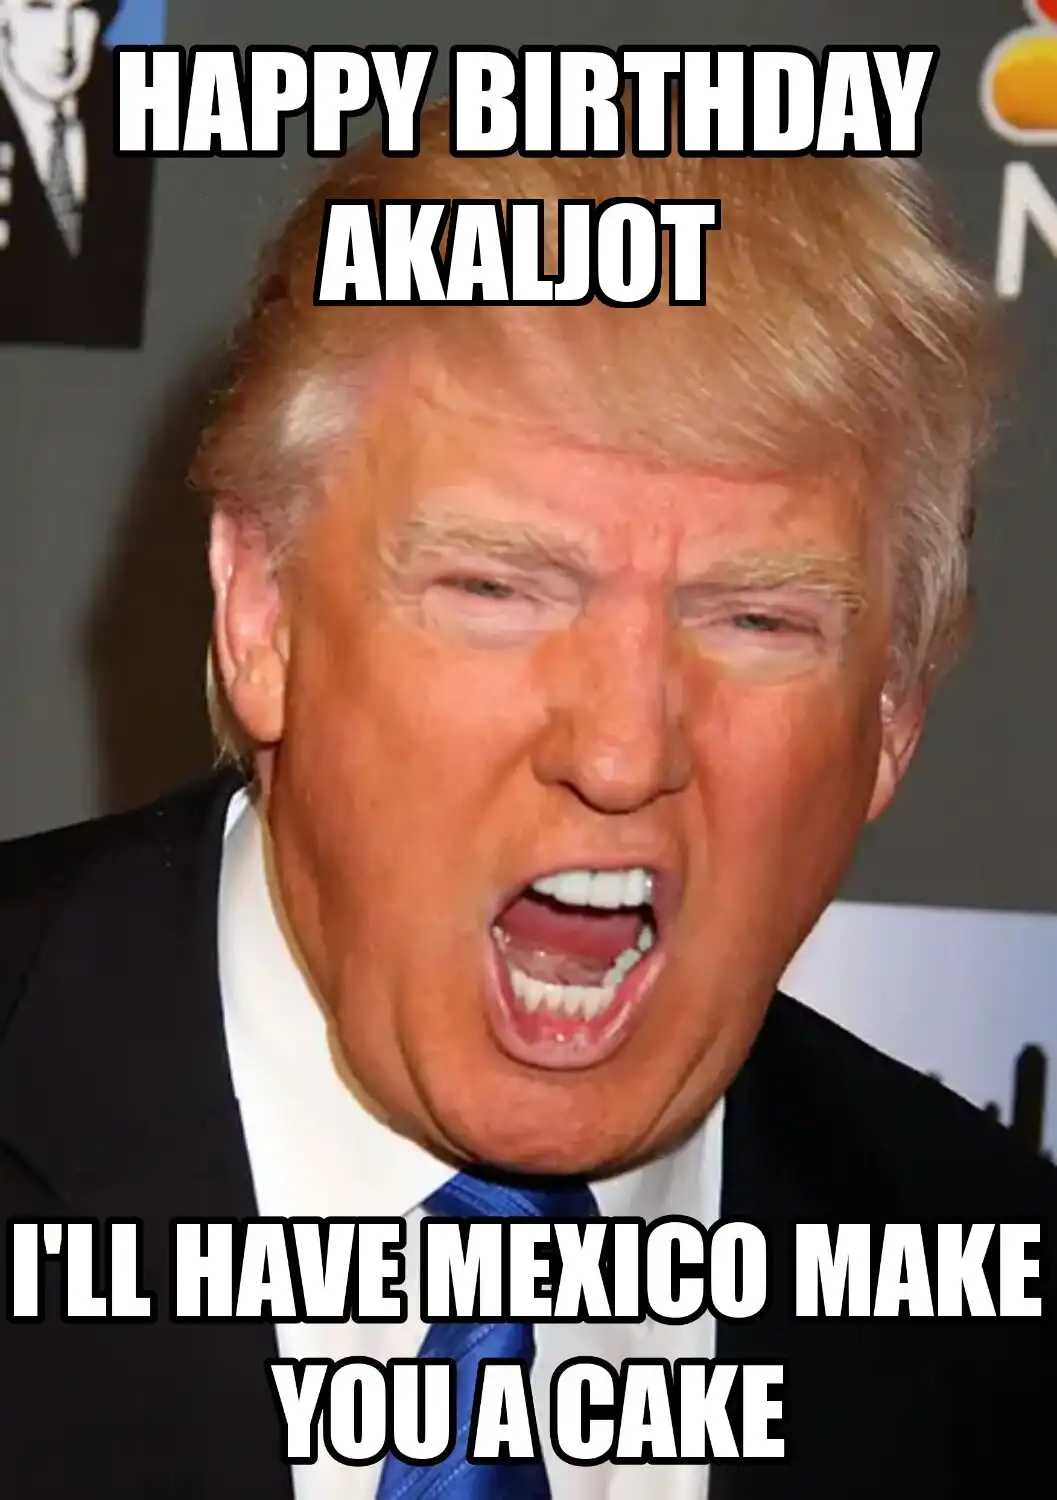 Happy Birthday Akaljot Mexico Make You A Cake Meme